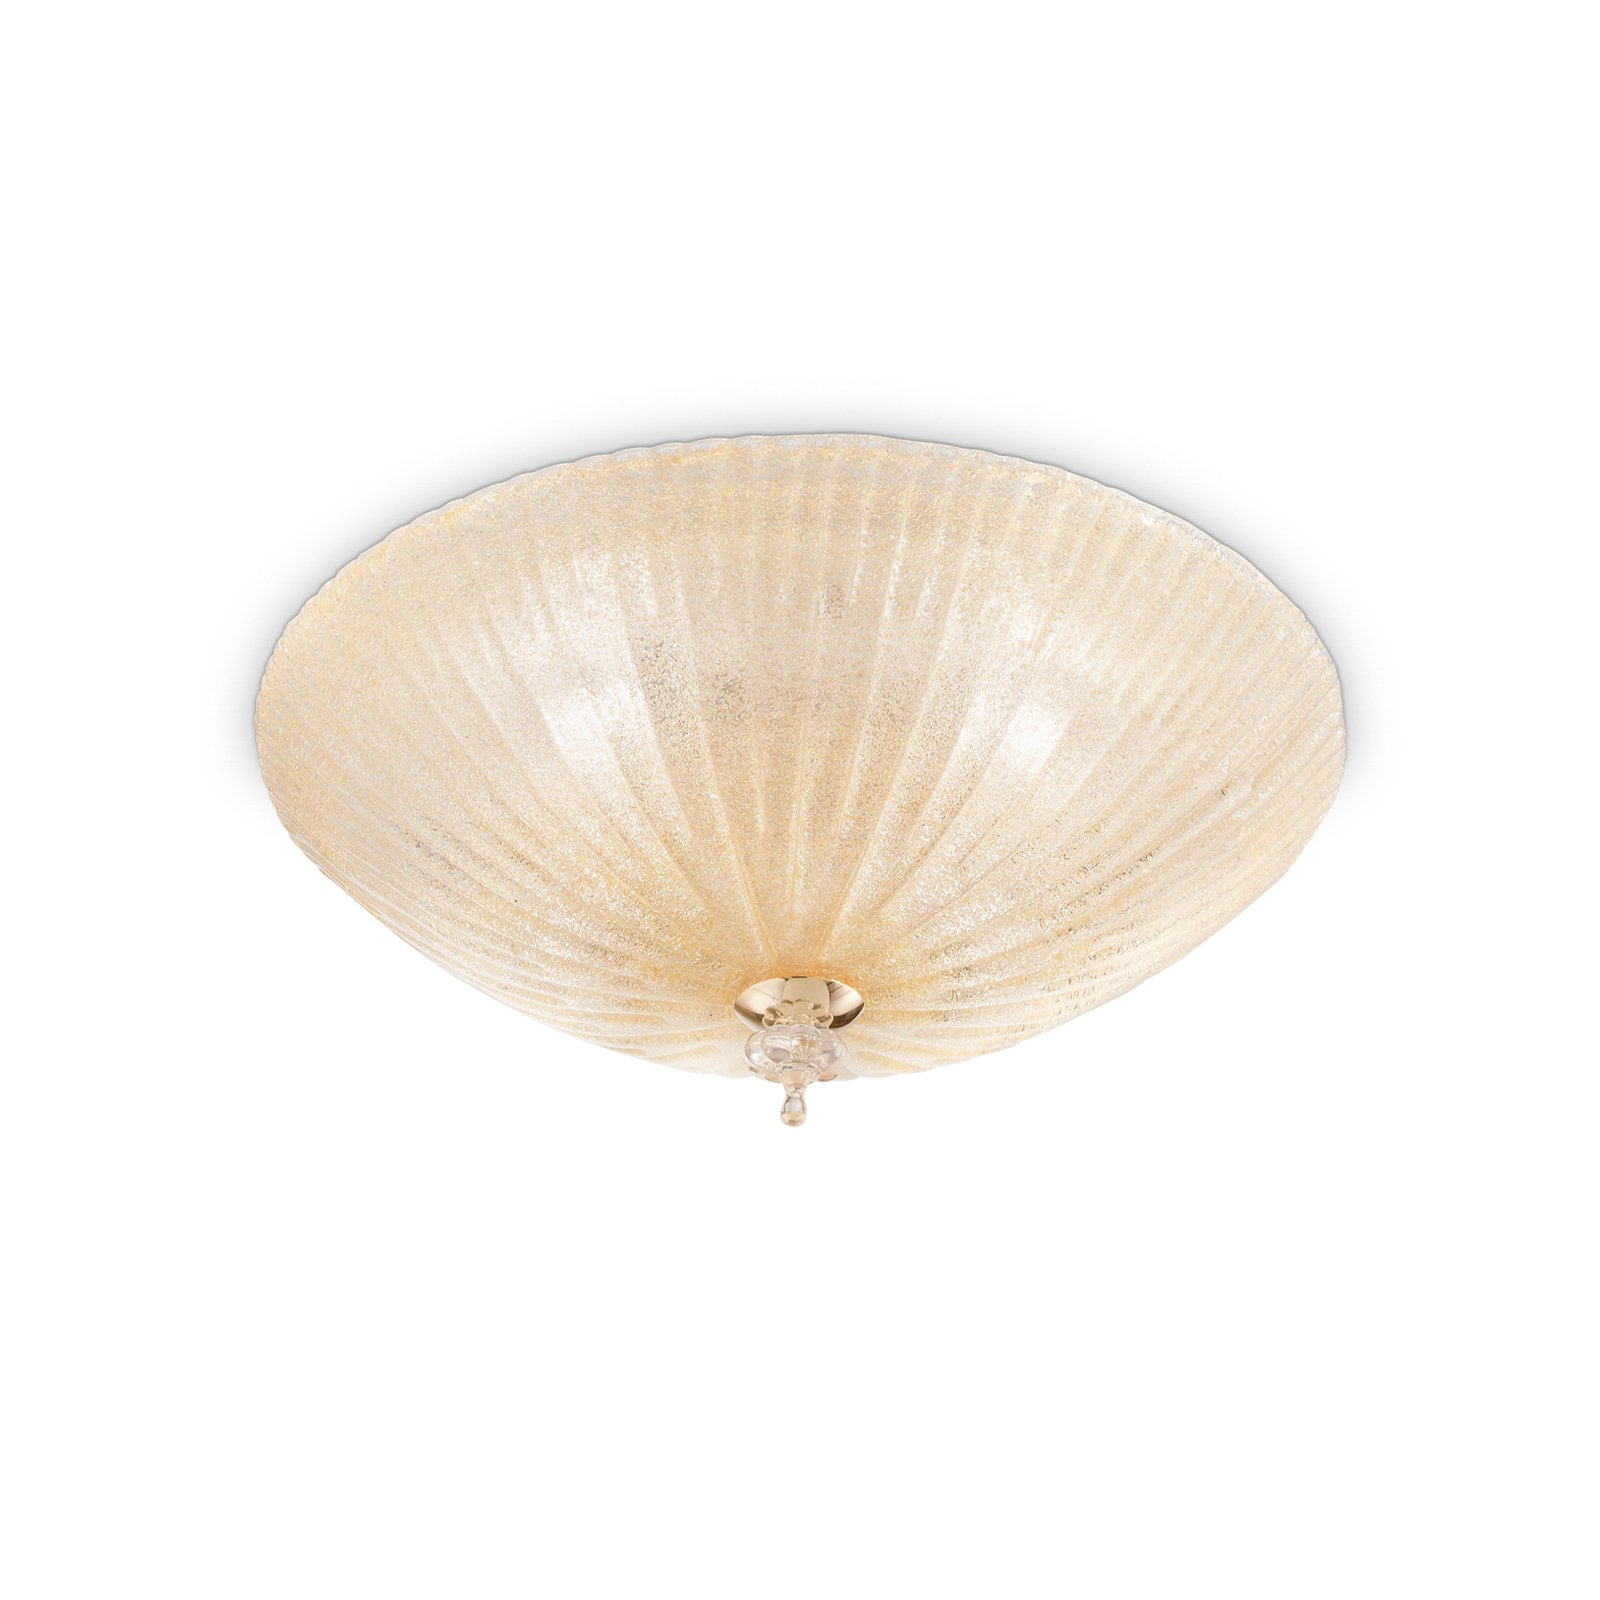 Ideal Lux stropna svjetiljka Shell, jantarna, staklo, Ø 50 cm